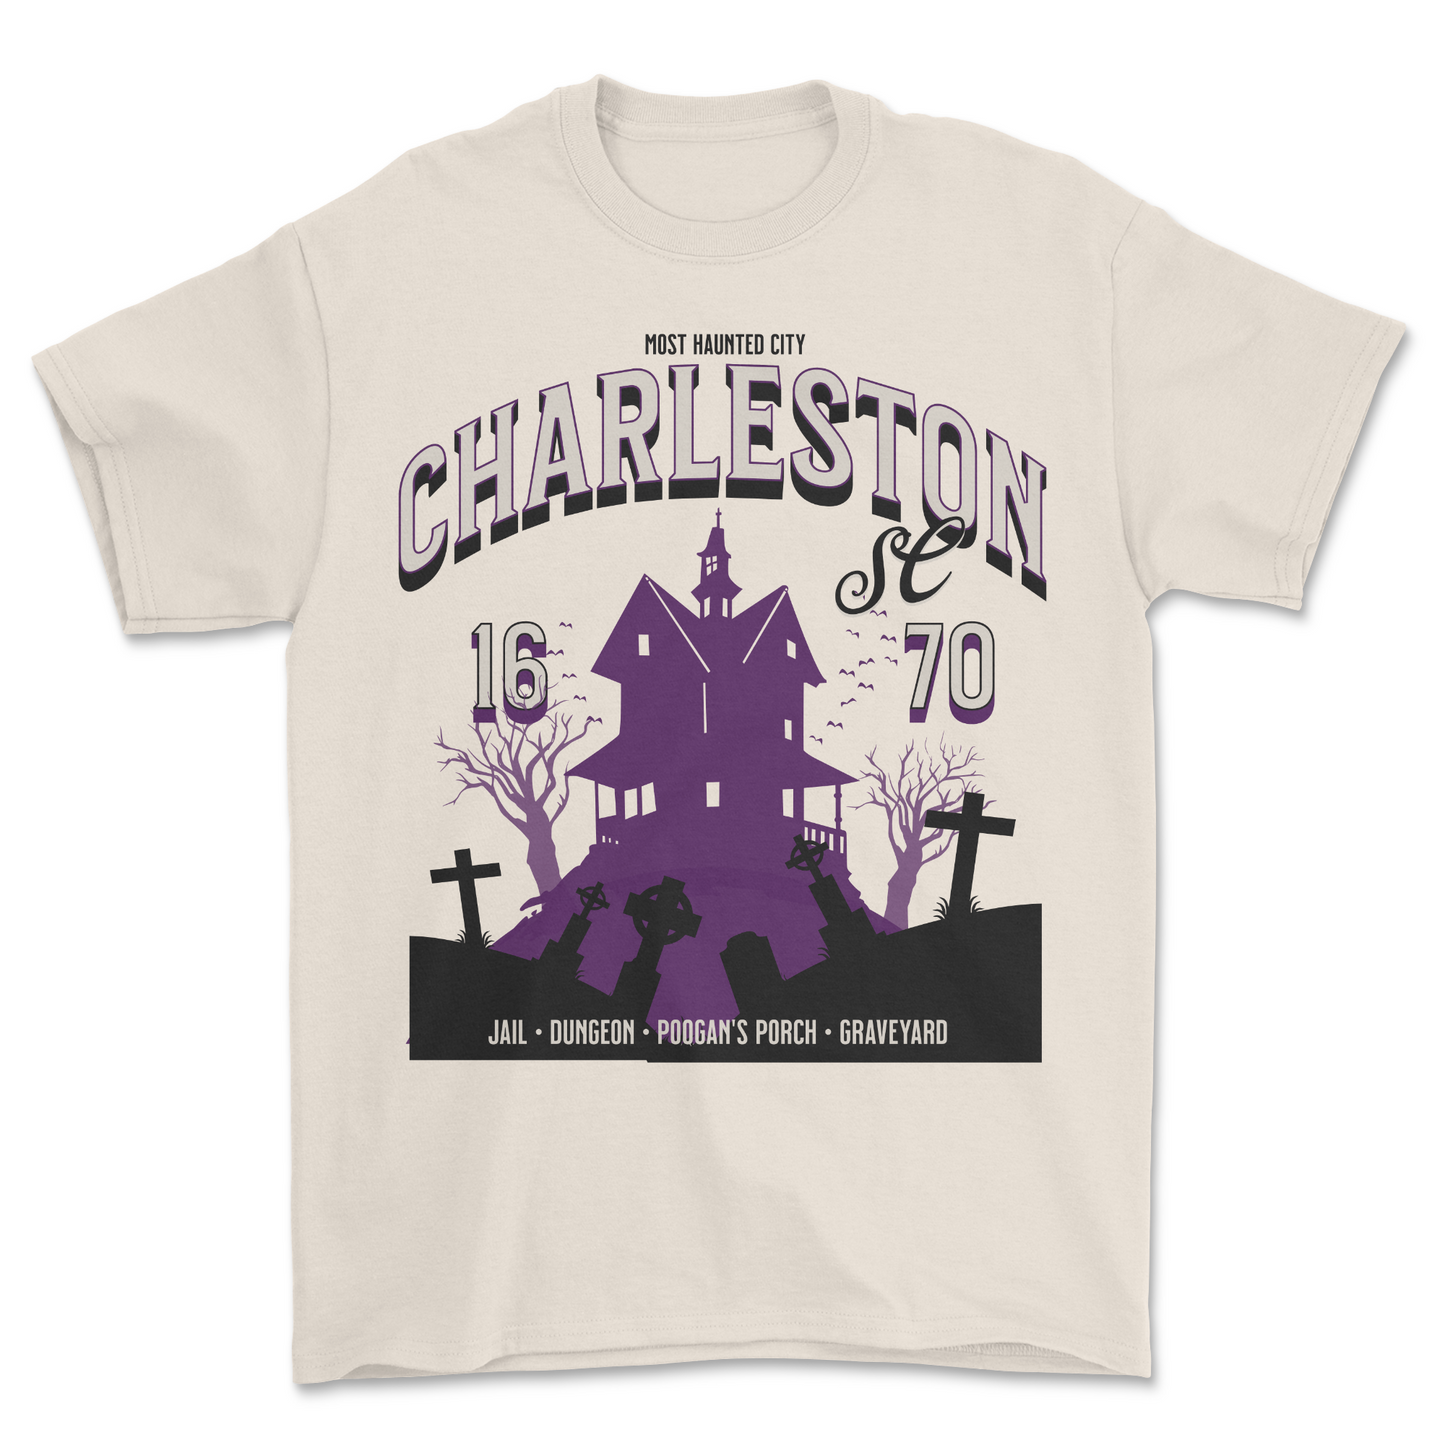 CHARLESTON SC T-SHIRT